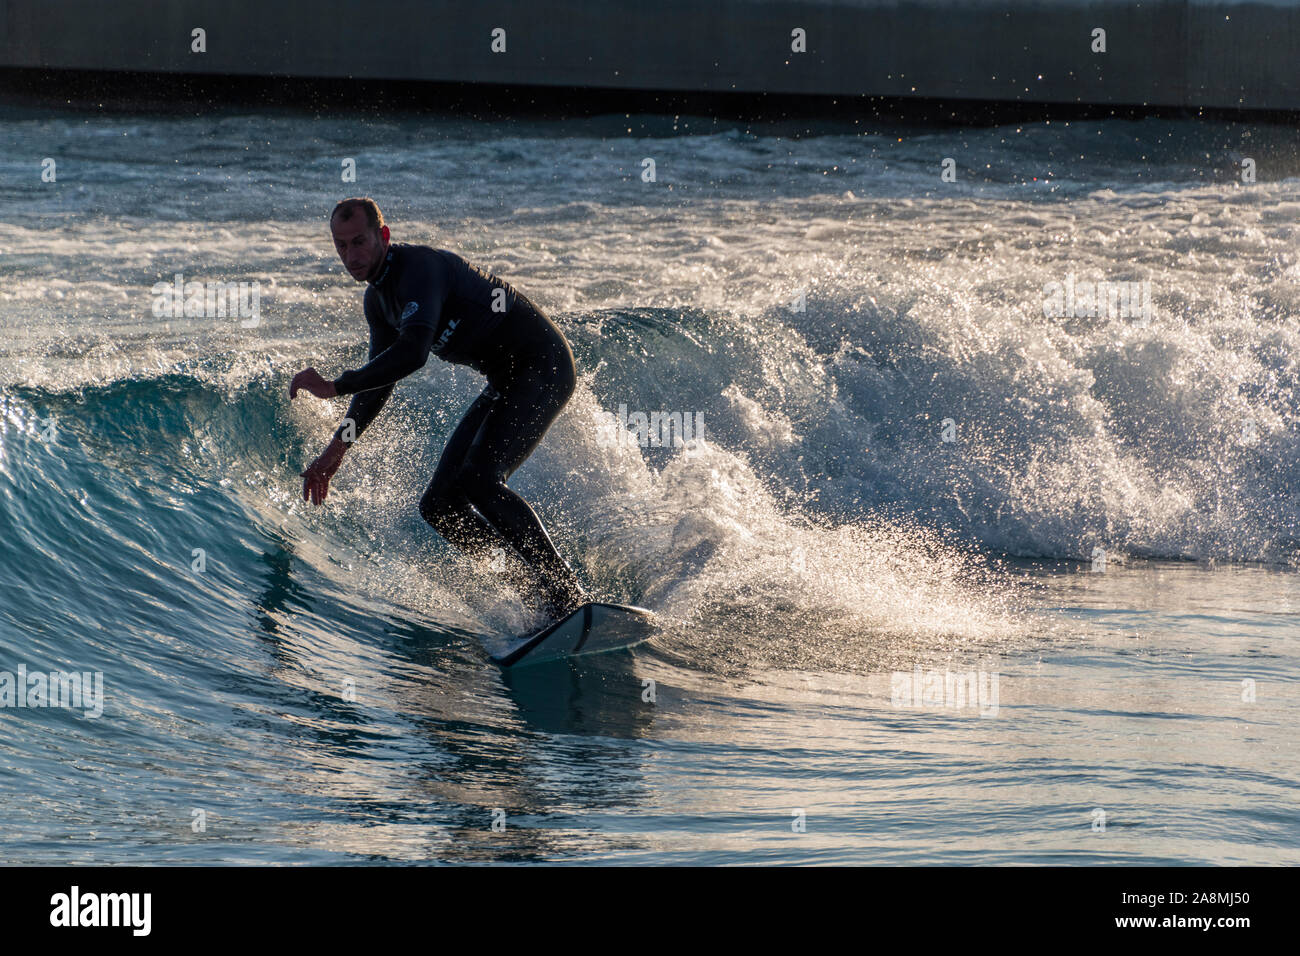 Surfer reiten Erweiterte ebene Wellen an der Welle, Bristol, eine künstliche Binnen surfen See in der Nähe von Bristol, UK. Stockfoto